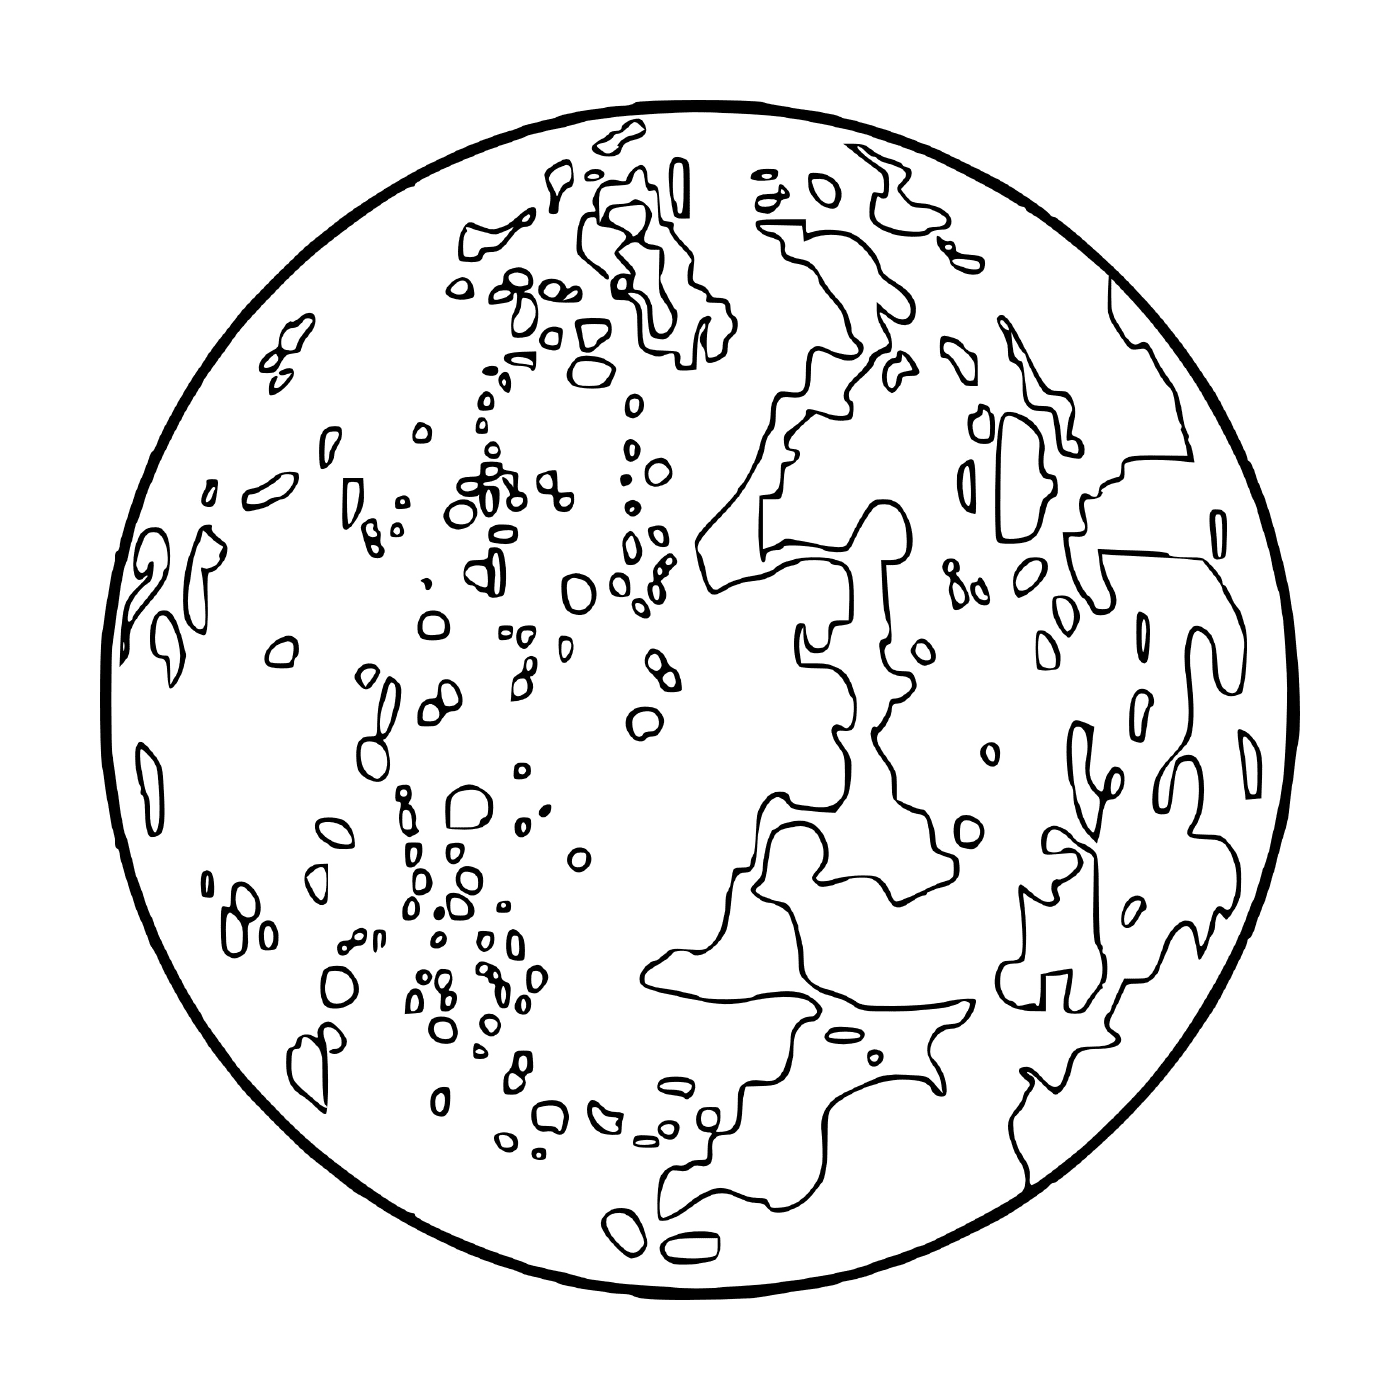  Mond mit vielen Kratern 